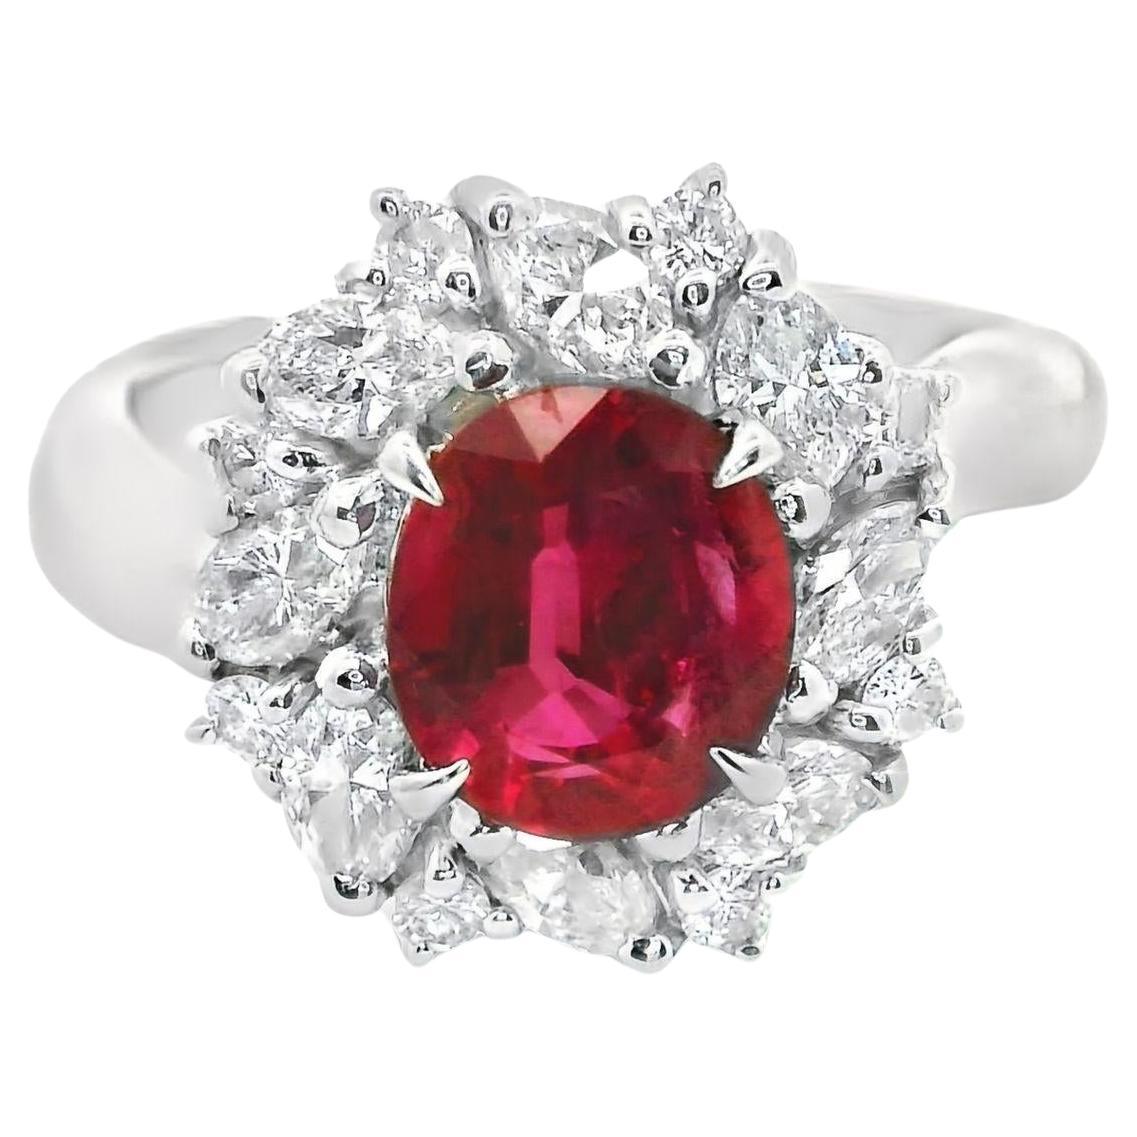 1.65 Carat Ruby Diamond Platinum Ring, GIA Certified